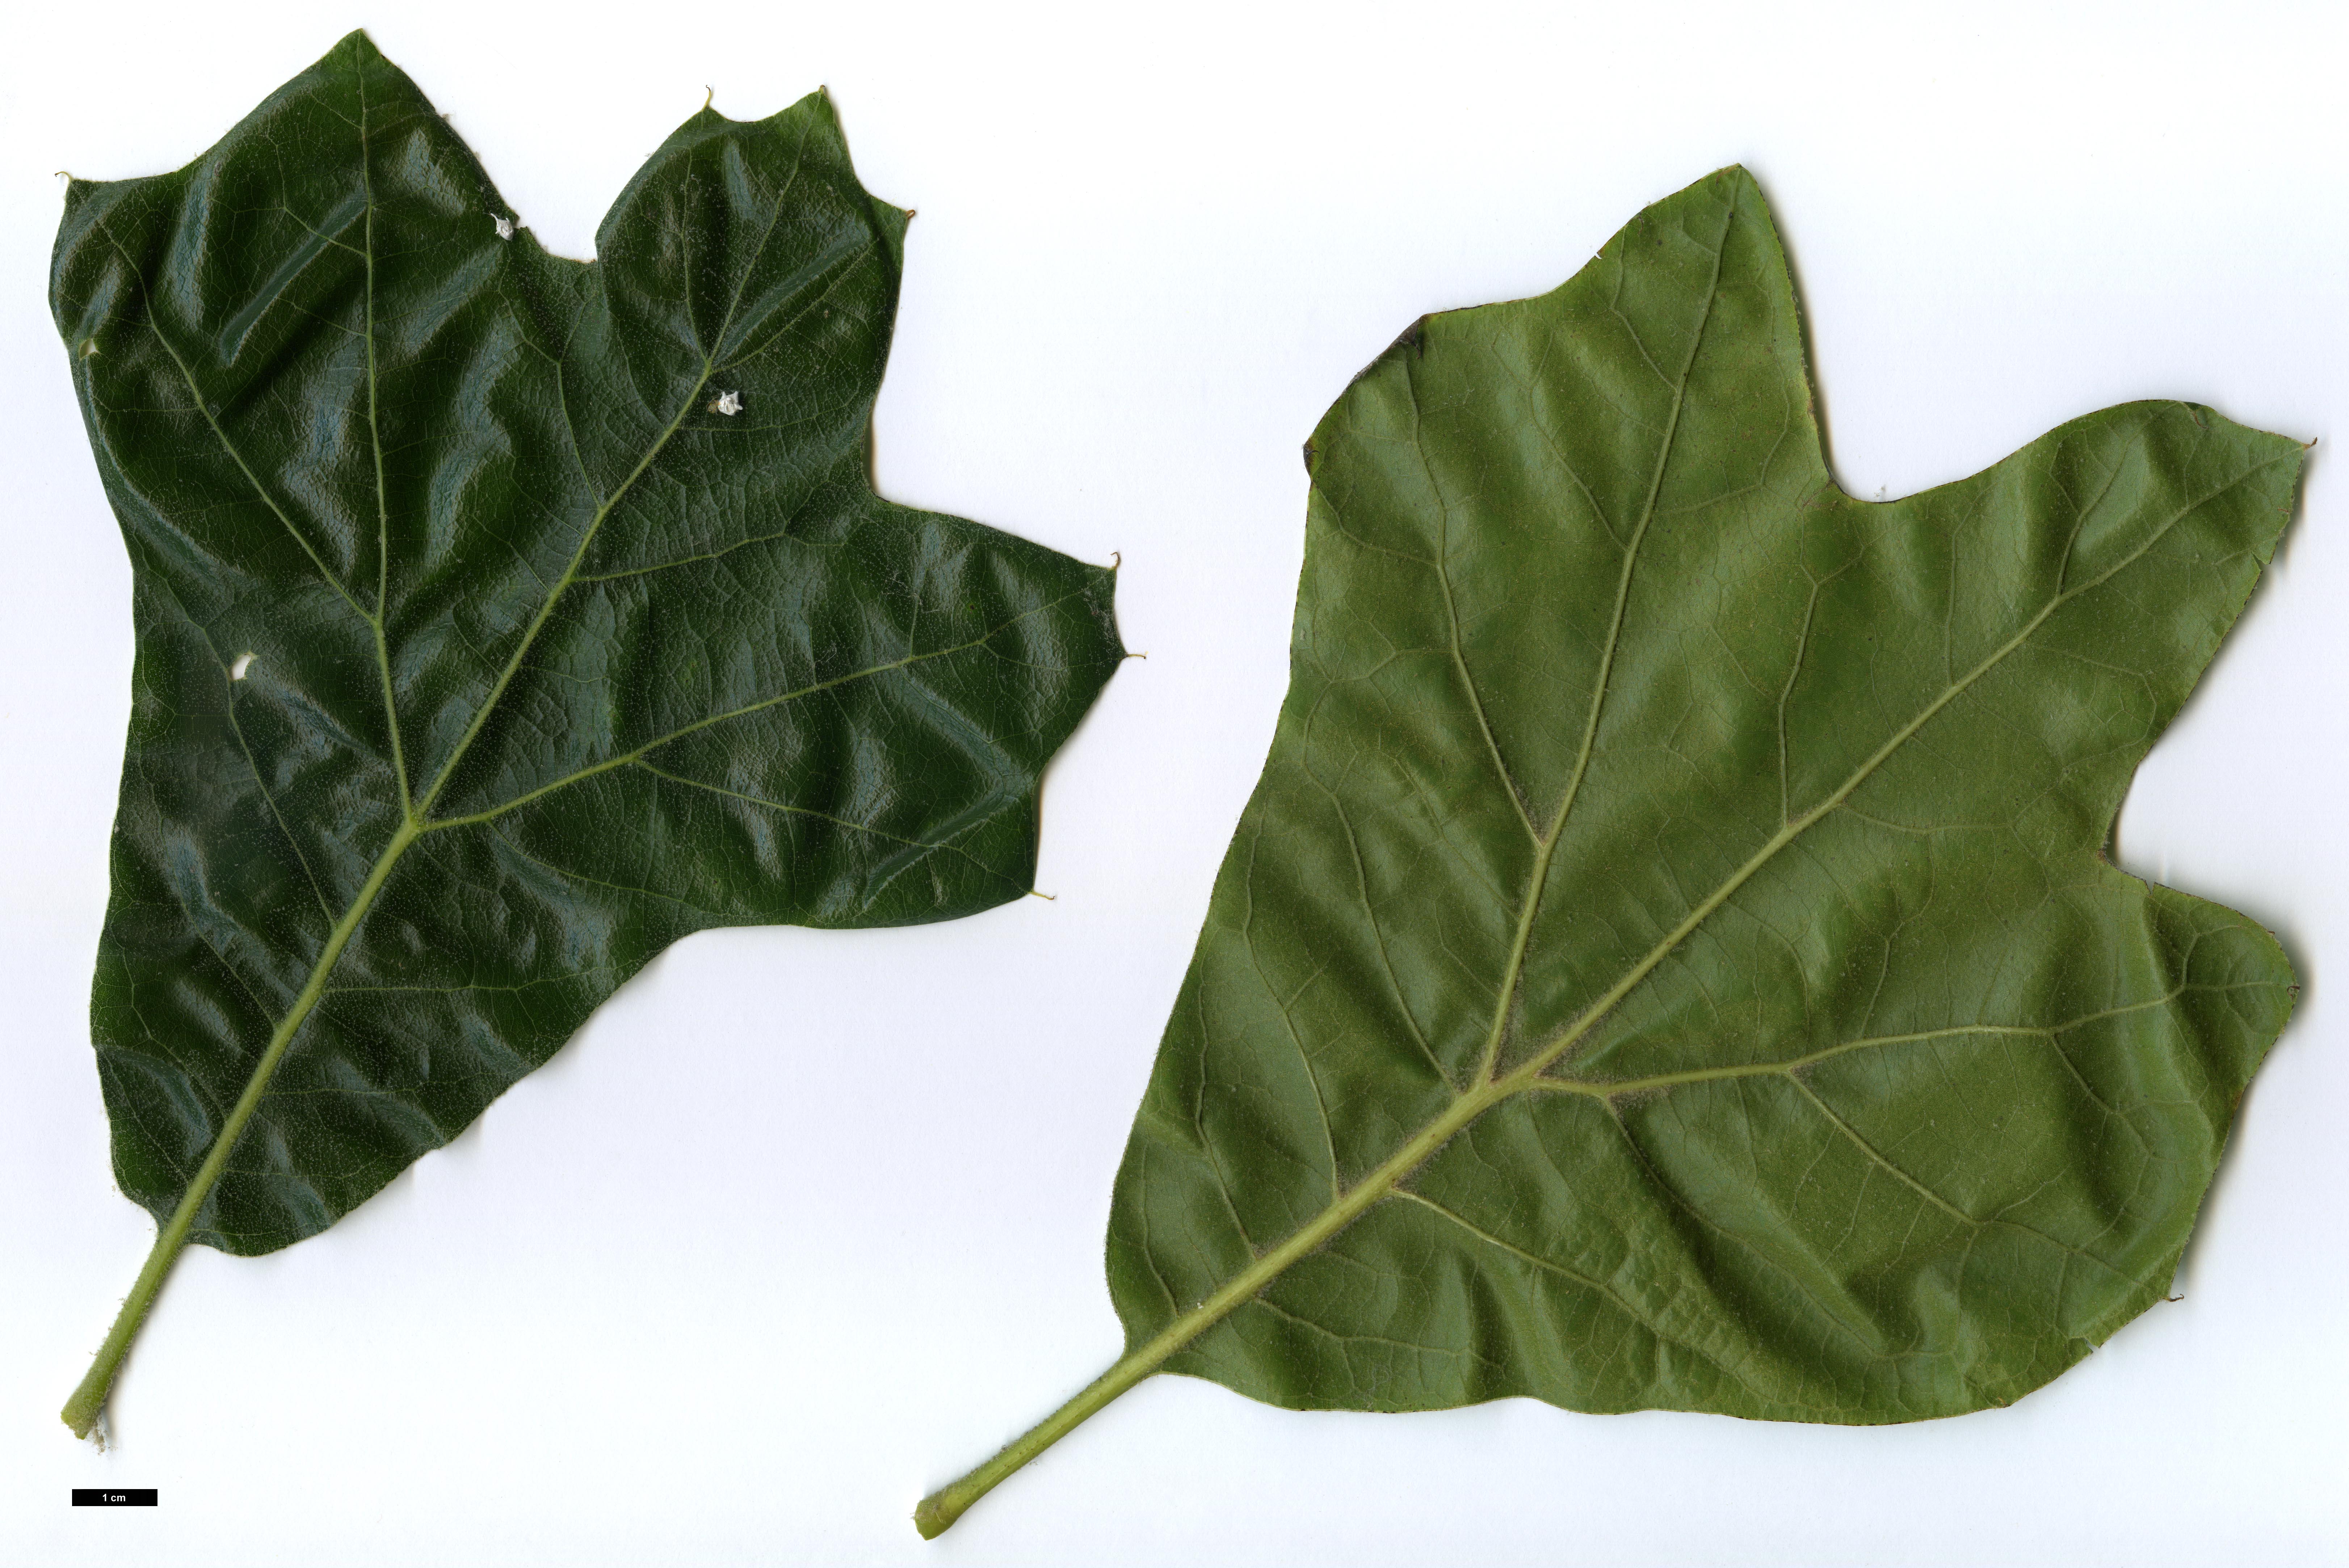 High resolution image: Family: Fagaceae - Genus: Quercus - Taxon: ×bushii - SpeciesSub: 'Seattle Trident' (Q.marilandica × Q.velutina)